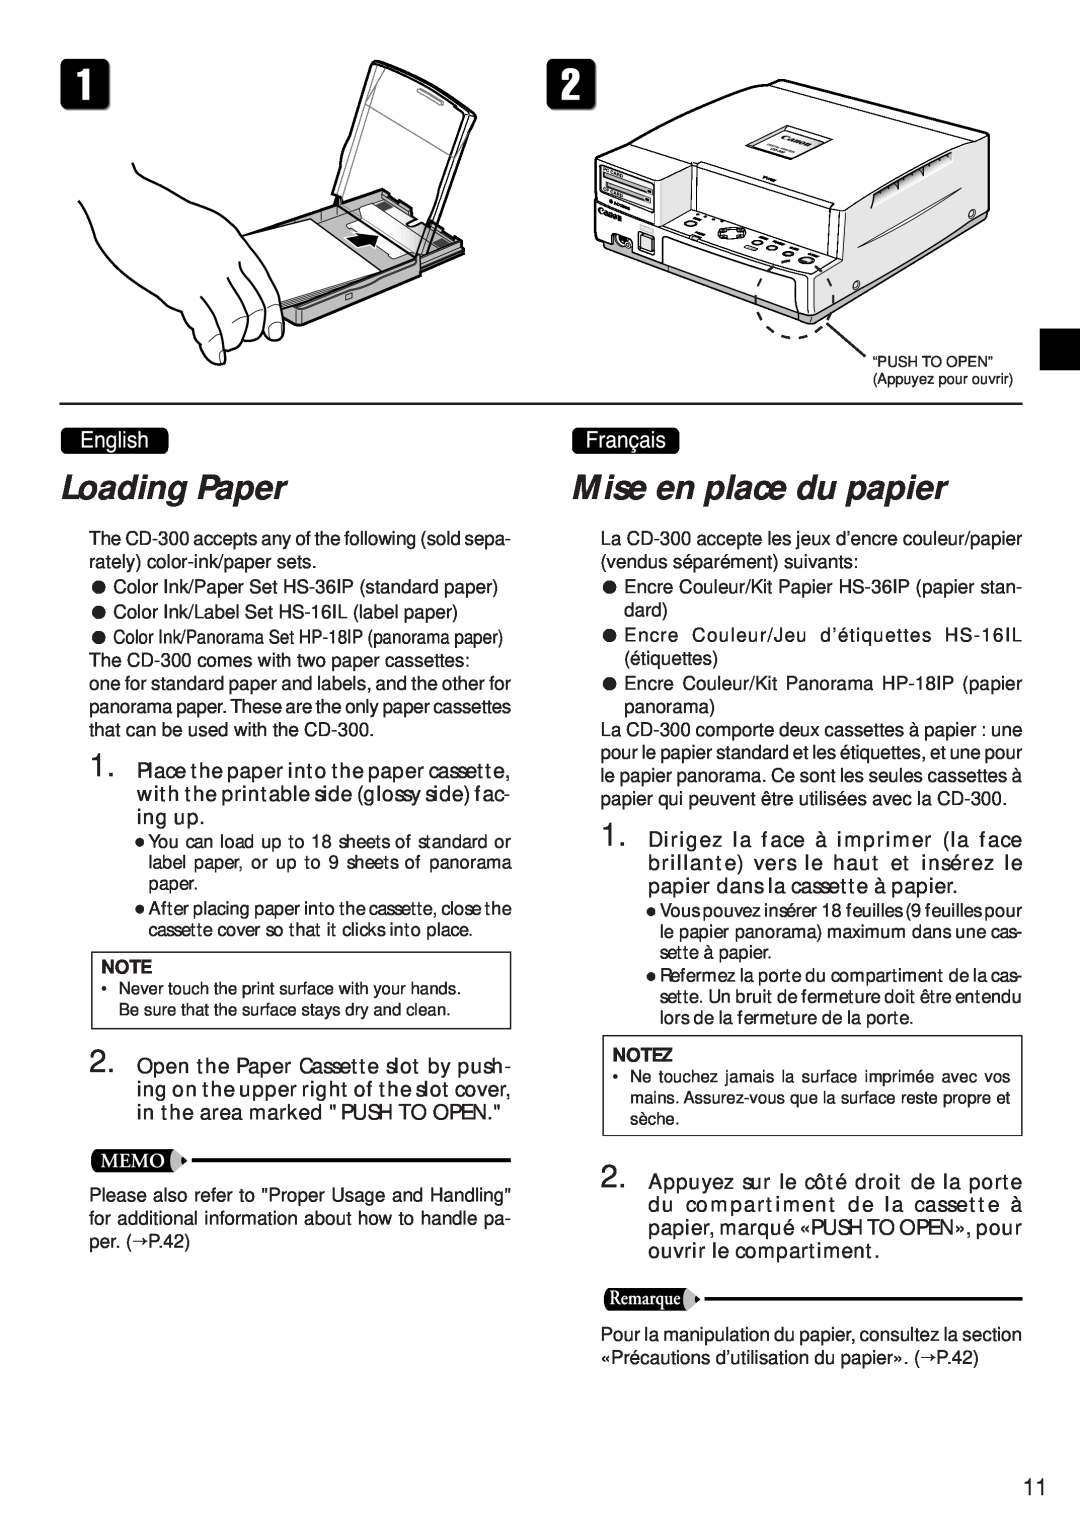 Canon CD-300 manual Loading Paper, Mise en place du papier, Notez 